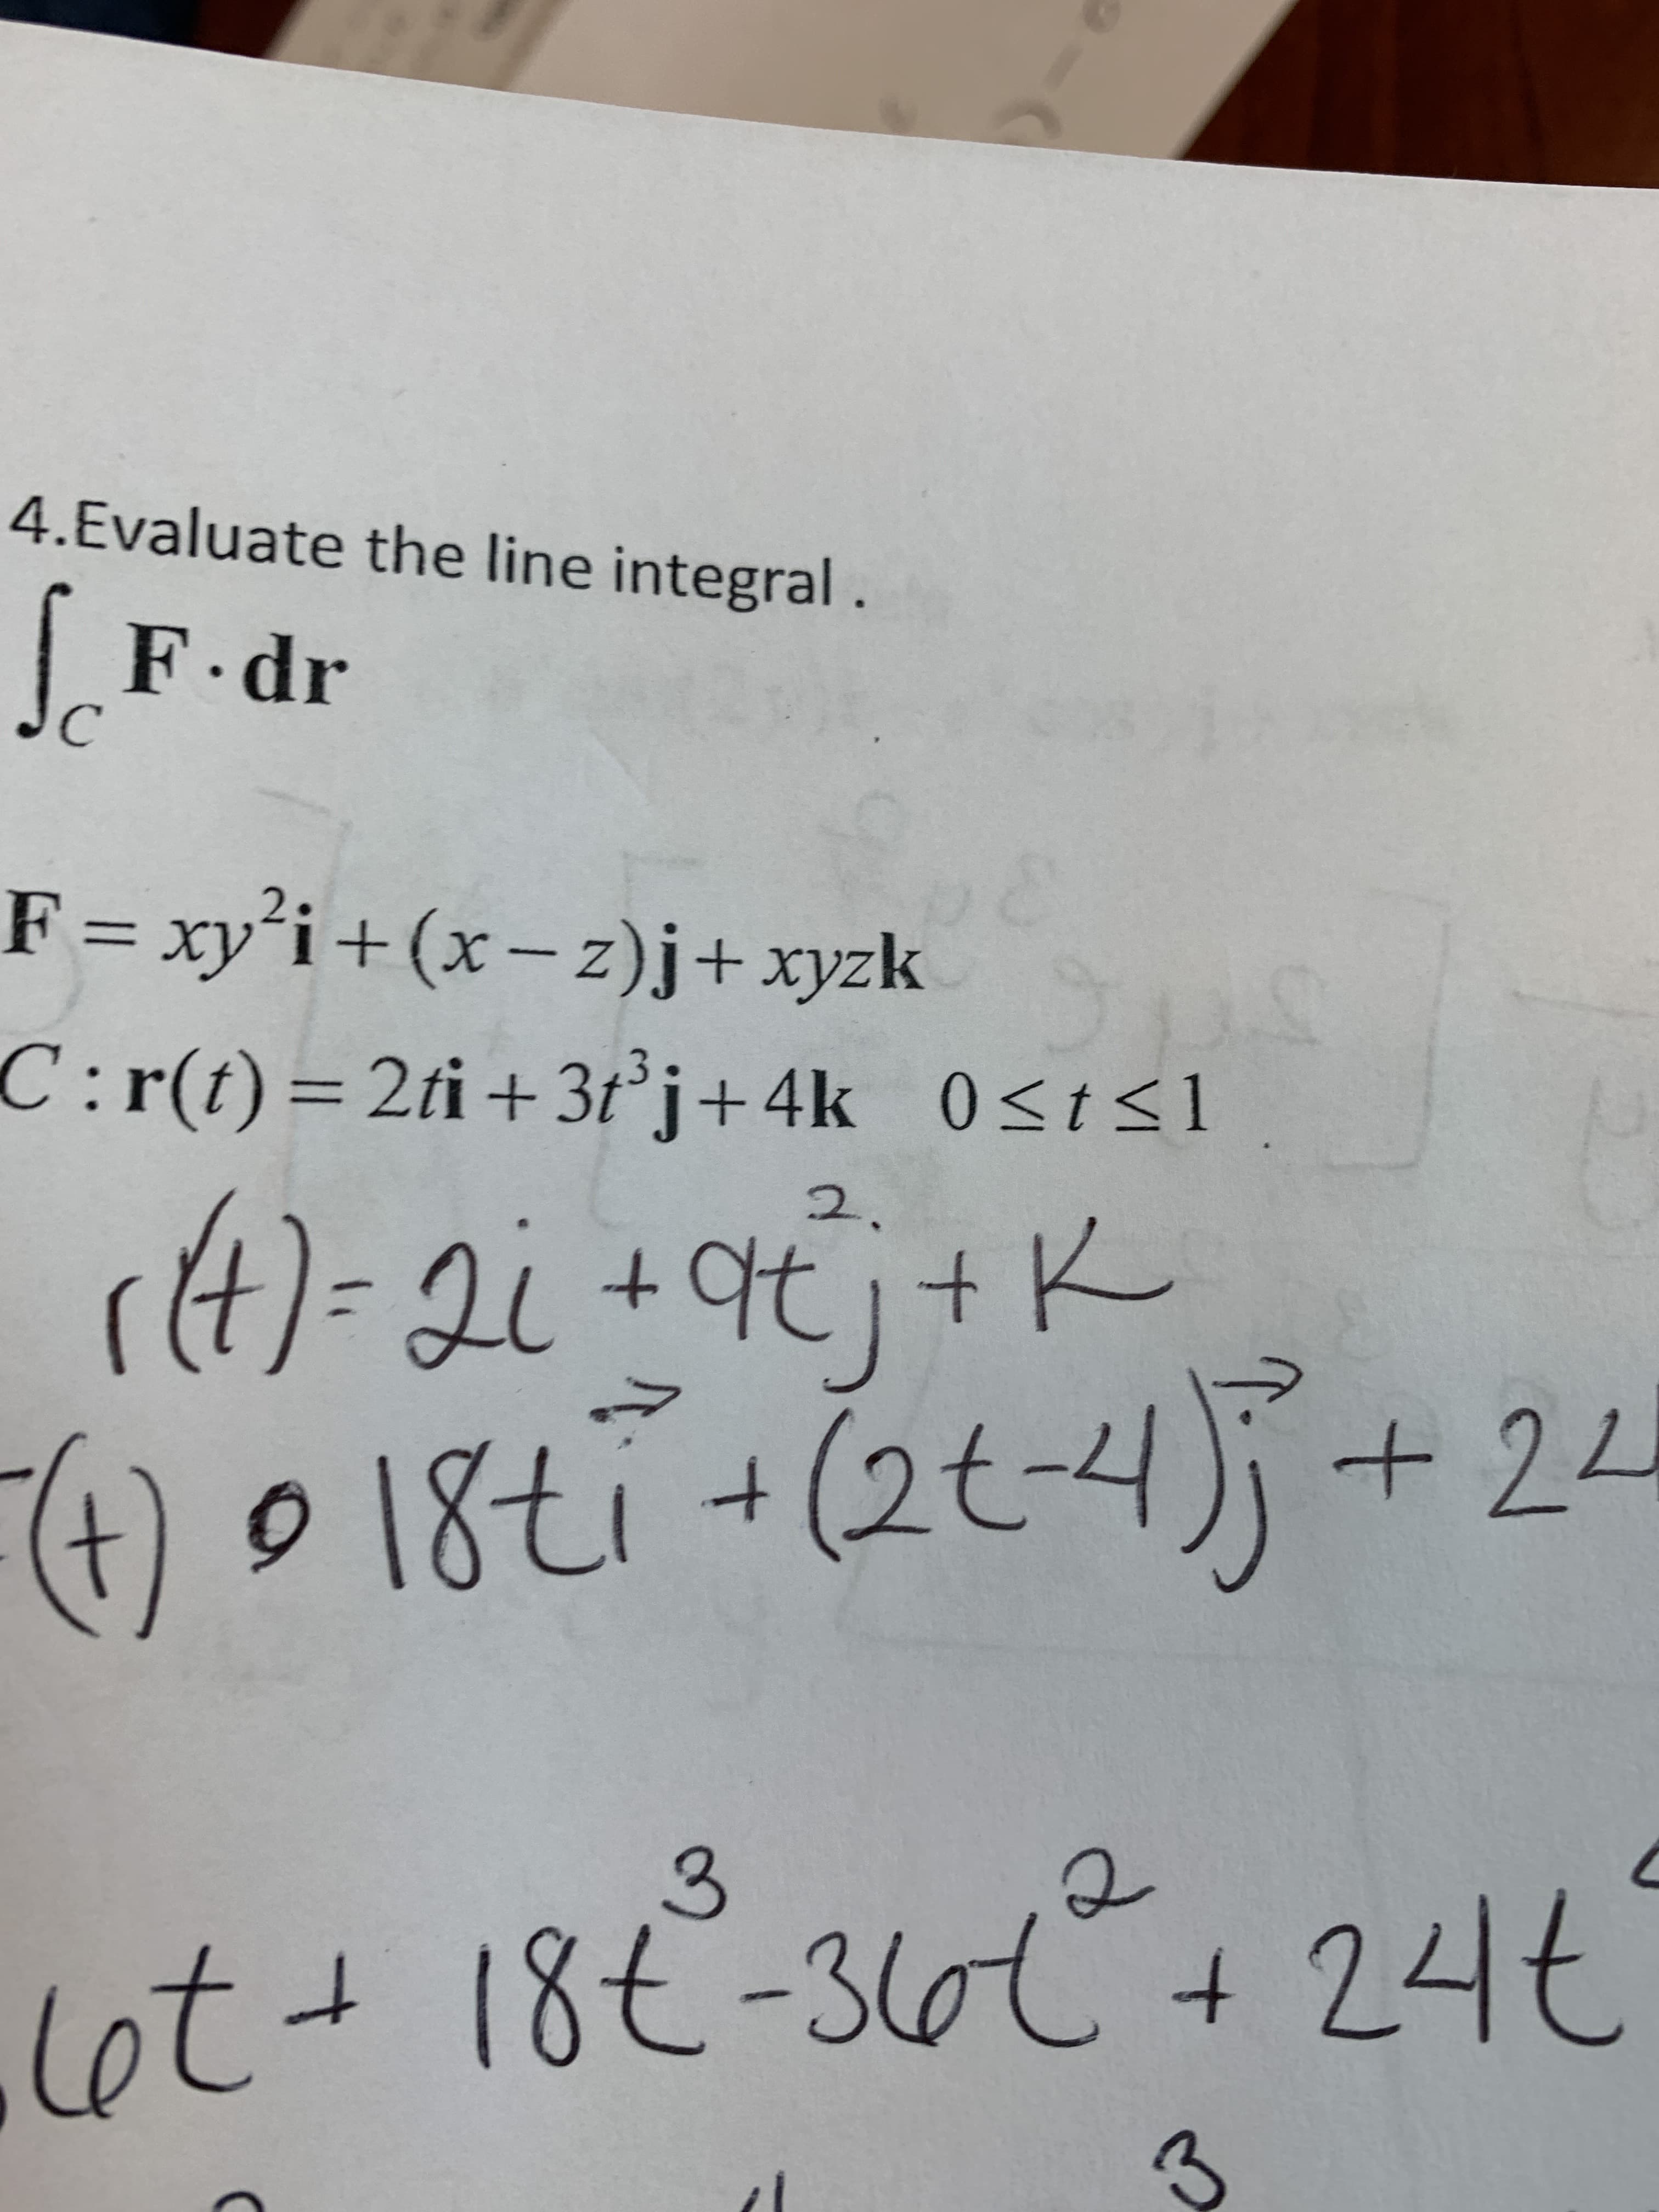 4.Evaluate the line integral.
|F.dr
C
F = xy'i+(x- z)j+xyzk
C:r(t)=2ti+ 3t°j+4k 0<t<1
